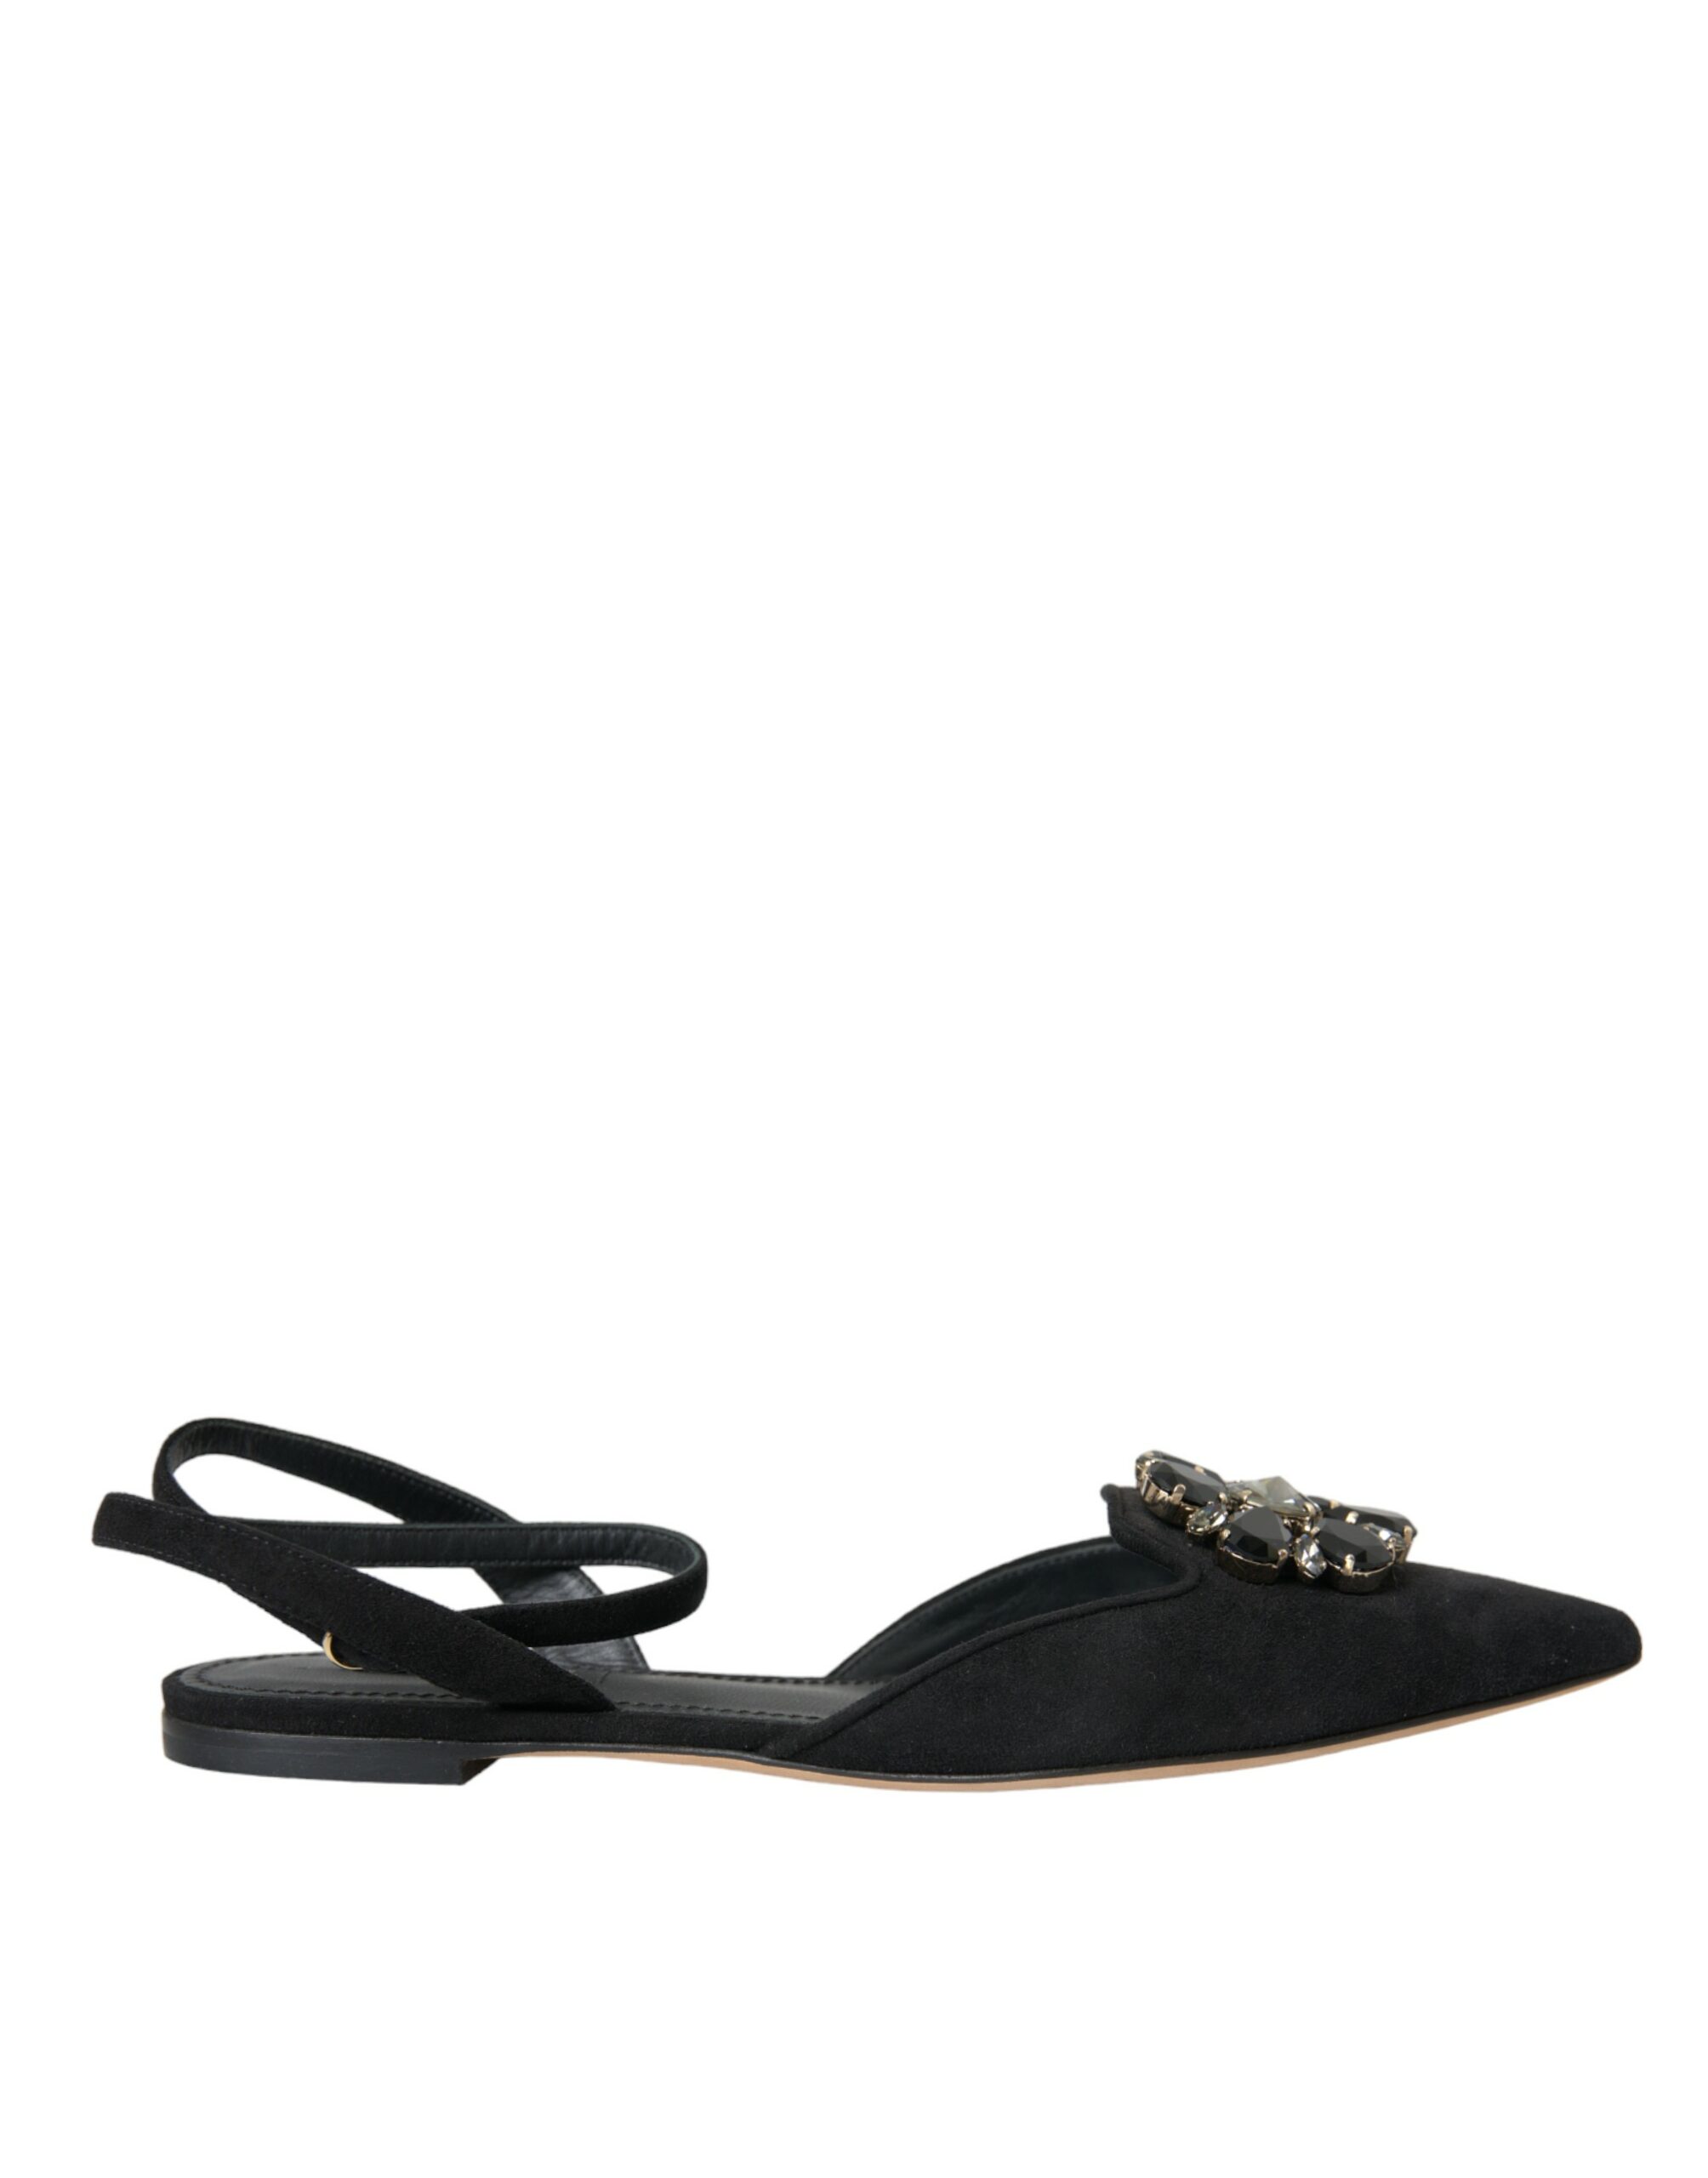 Dolce & Gabbana Black Leather Crystal Slingback Sandals Shoes EU38/US7.5 Black